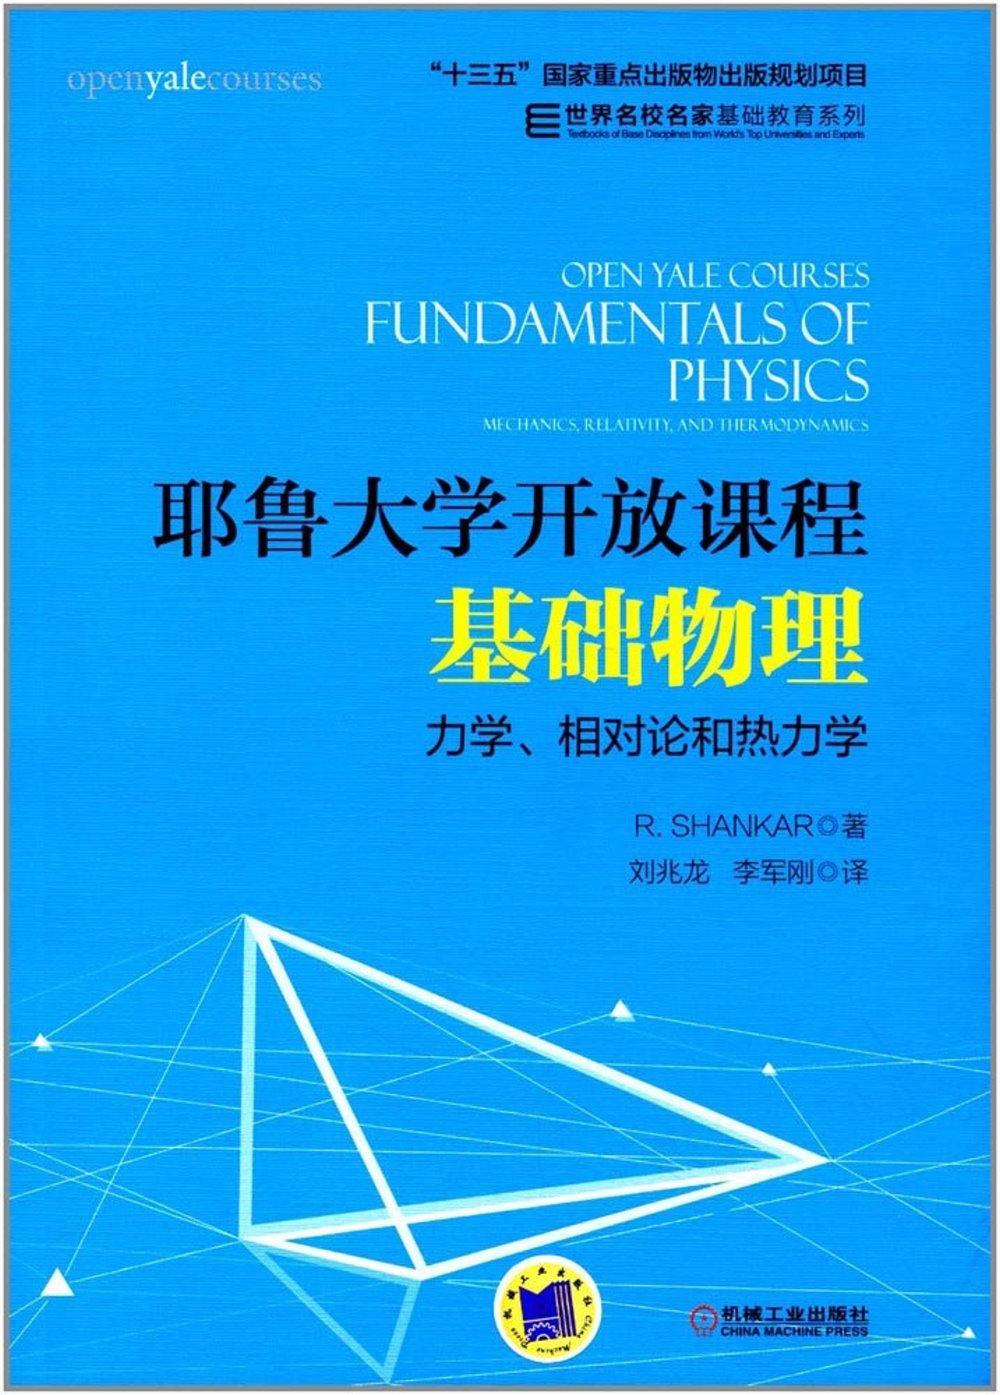 耶魯大學開放課程：基礎物理--力學、相對論和熱力學